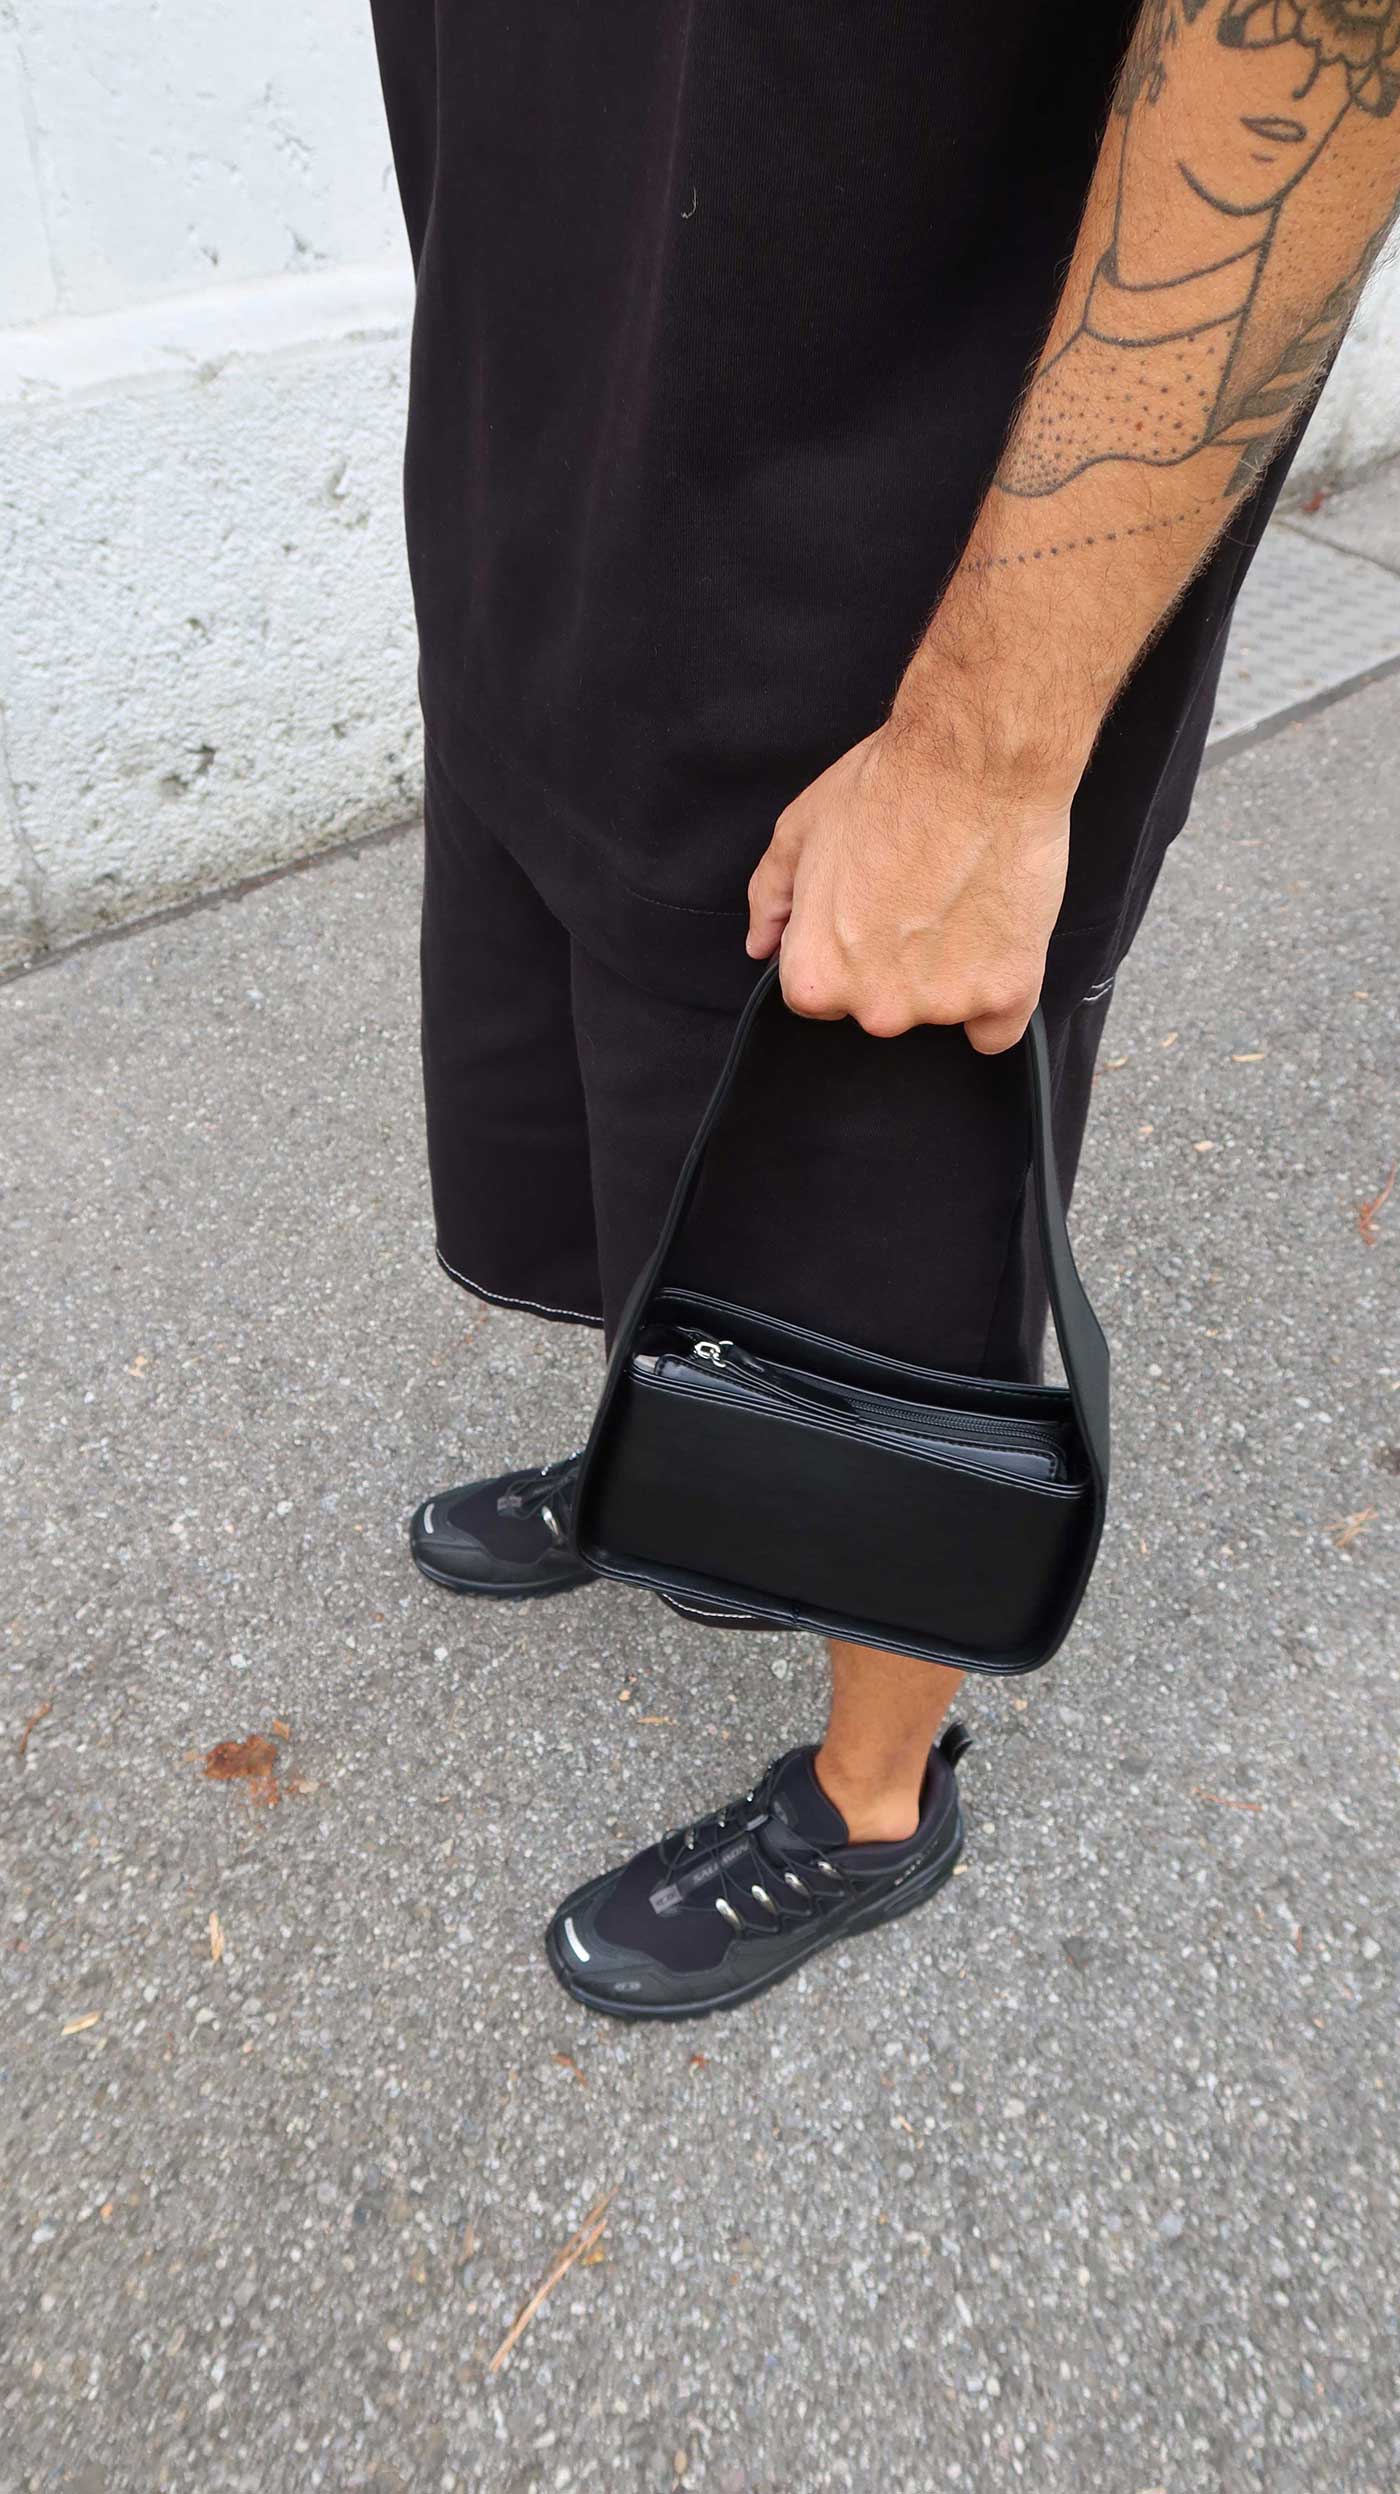 Le sac Zalando, un accessoire élégant pour compléter ce look tout en noir